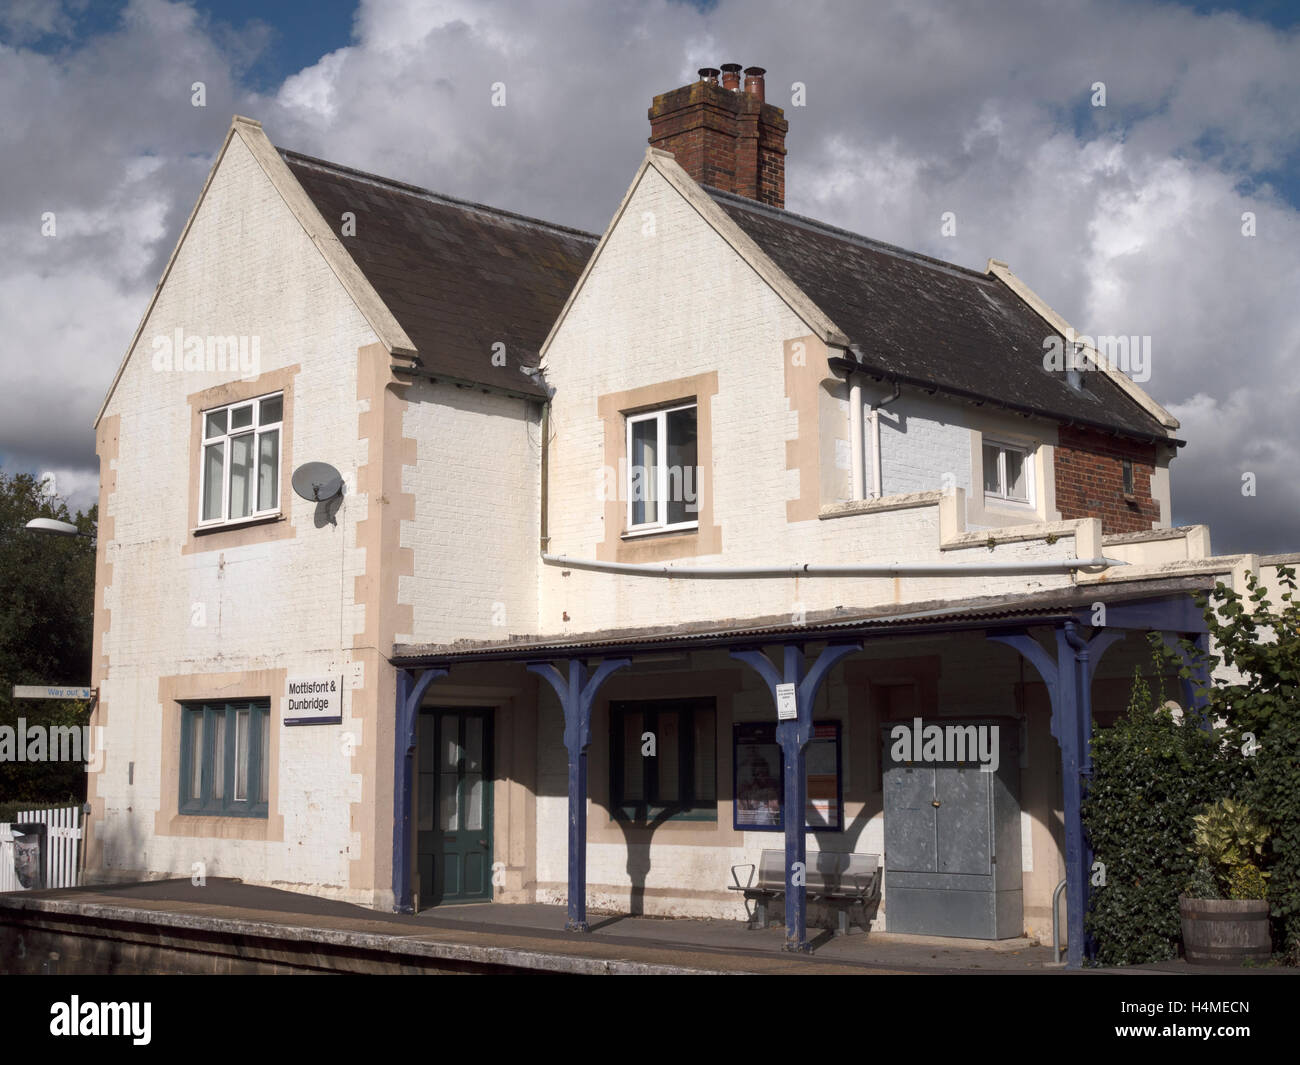 Mottisfont and Dunbridge Railway Station, Dunbridge, Hampshire, England, UK Stock Photo